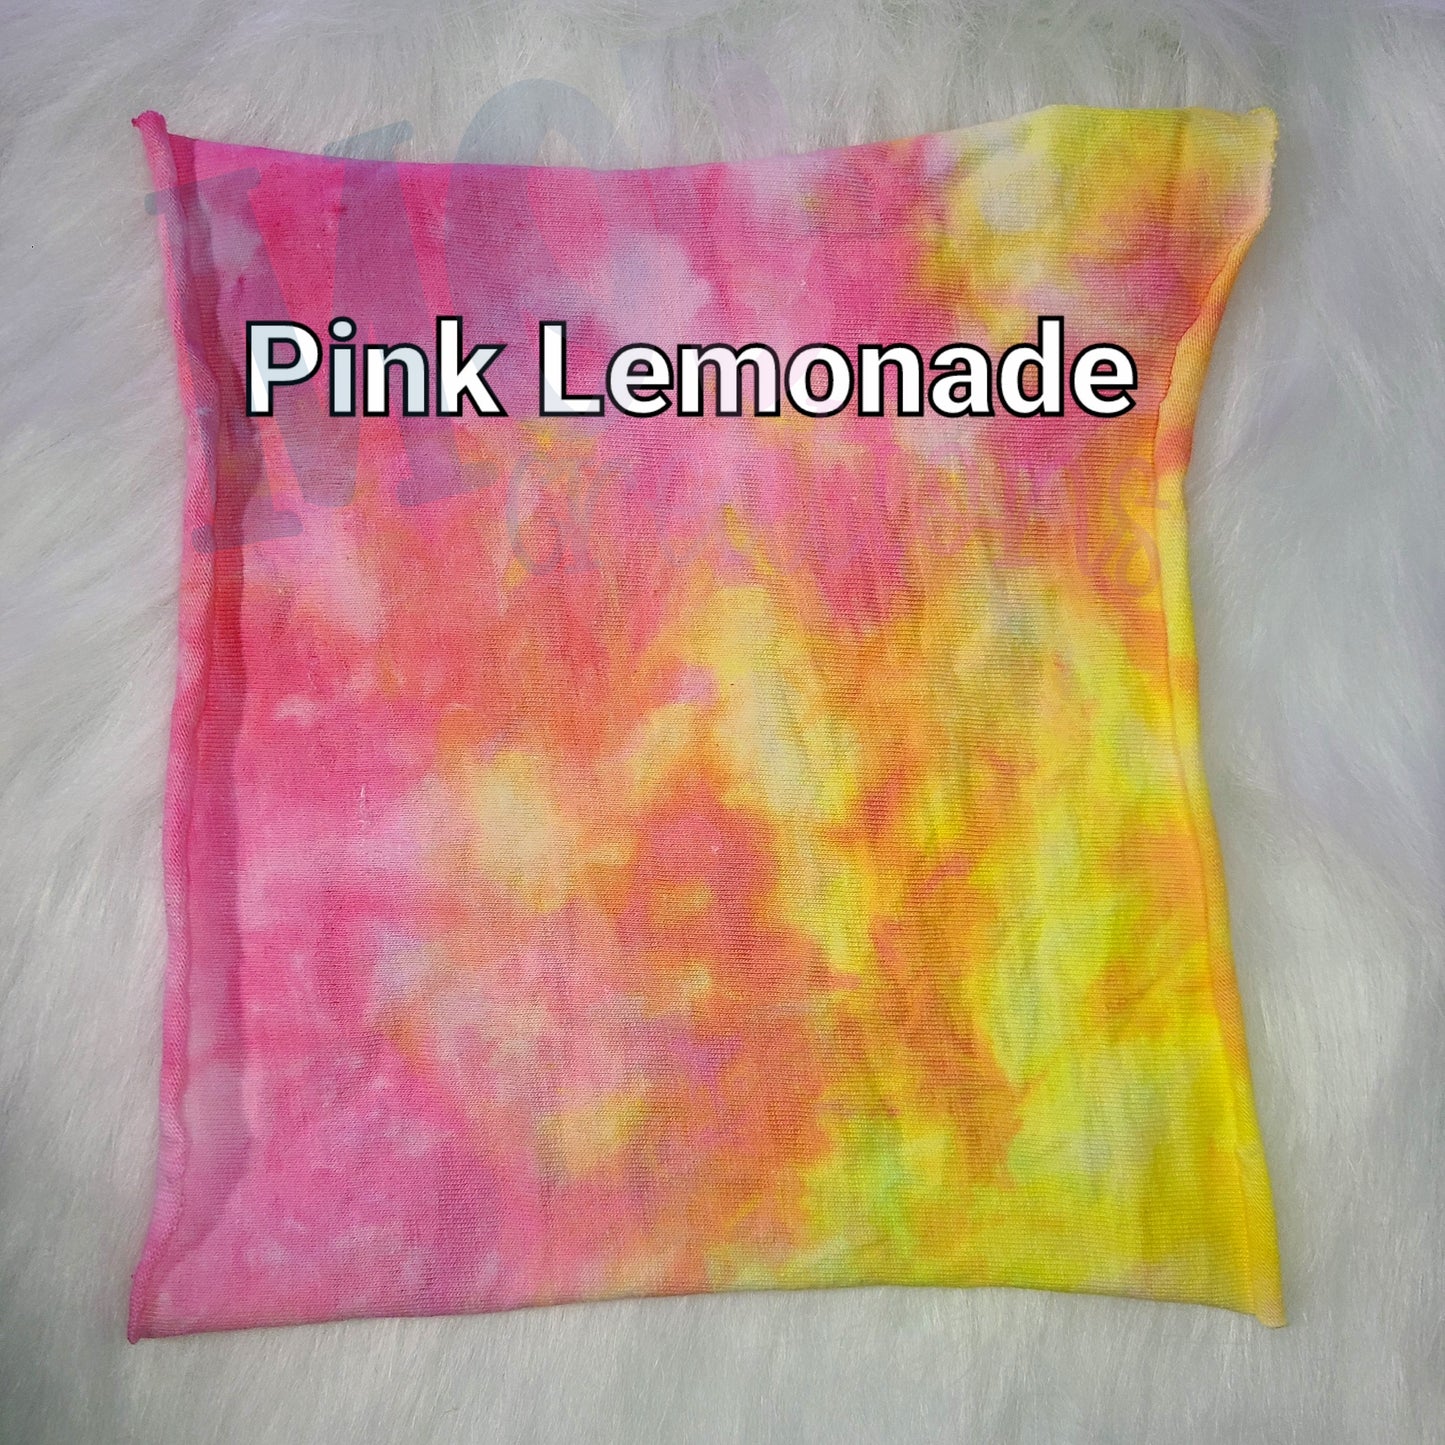 Pink Lemonade Blank